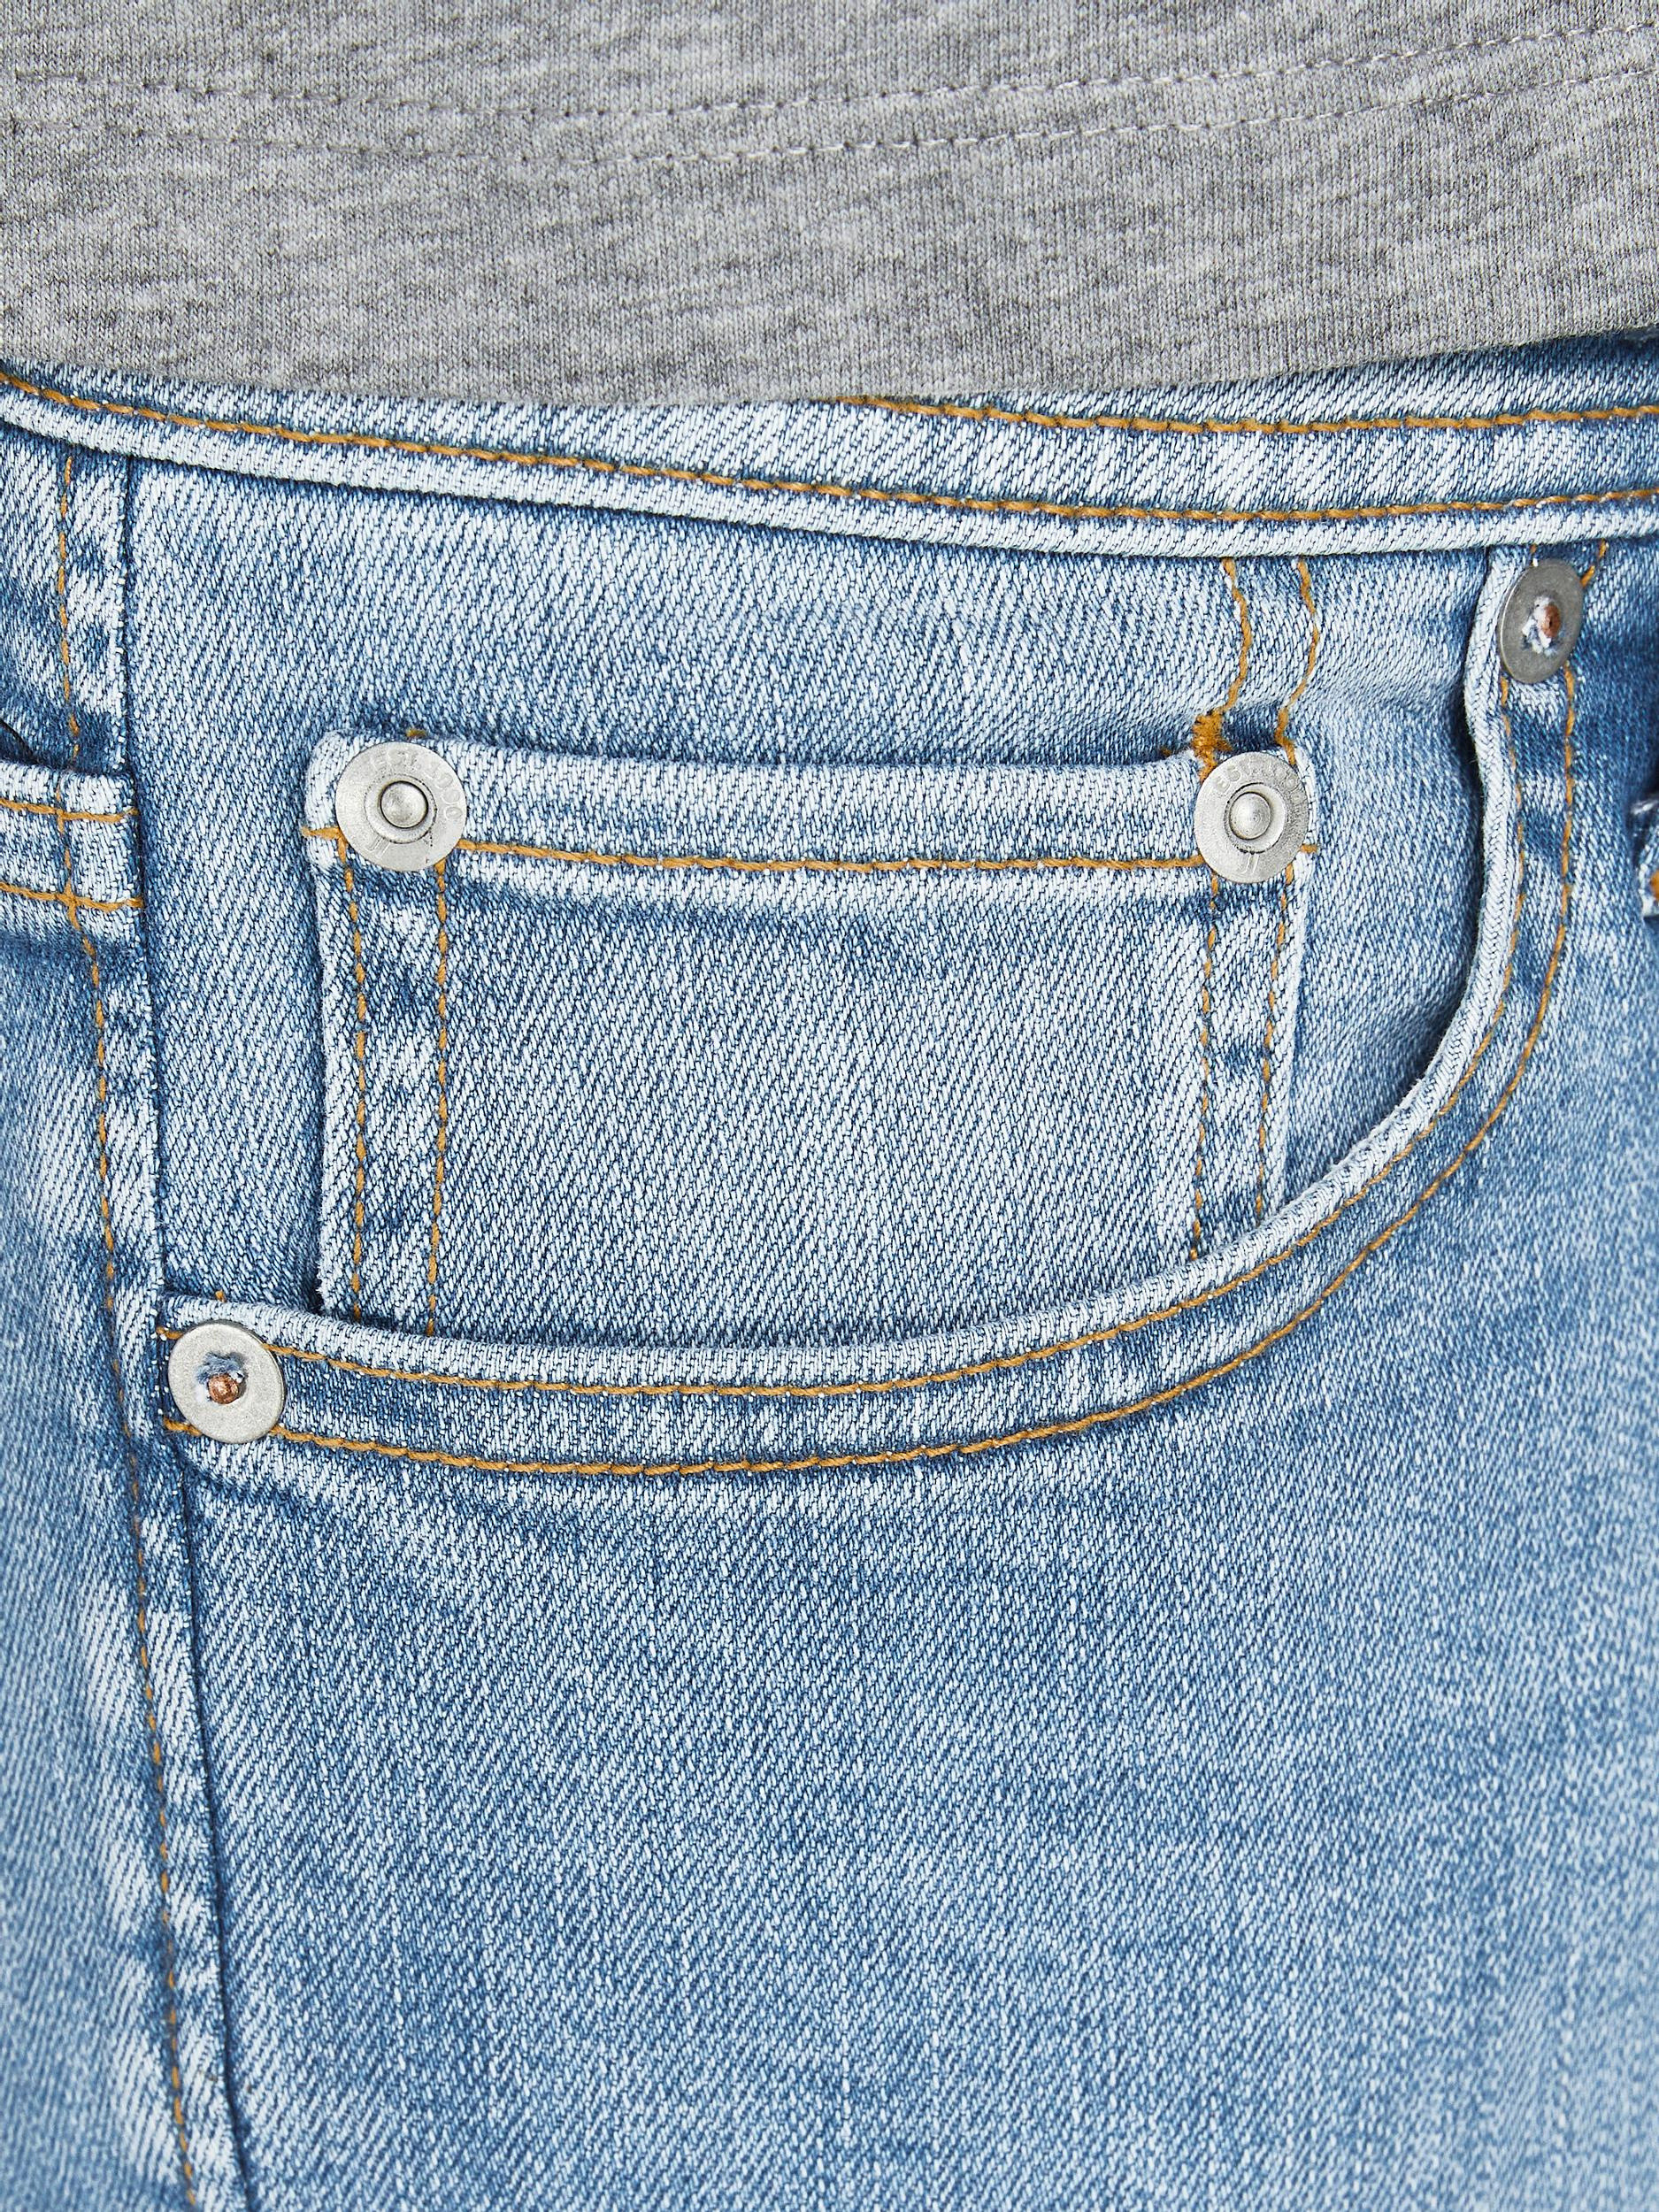 Jack & Jones - Jeans cinque tasche slim fit, Denim, large image number 7